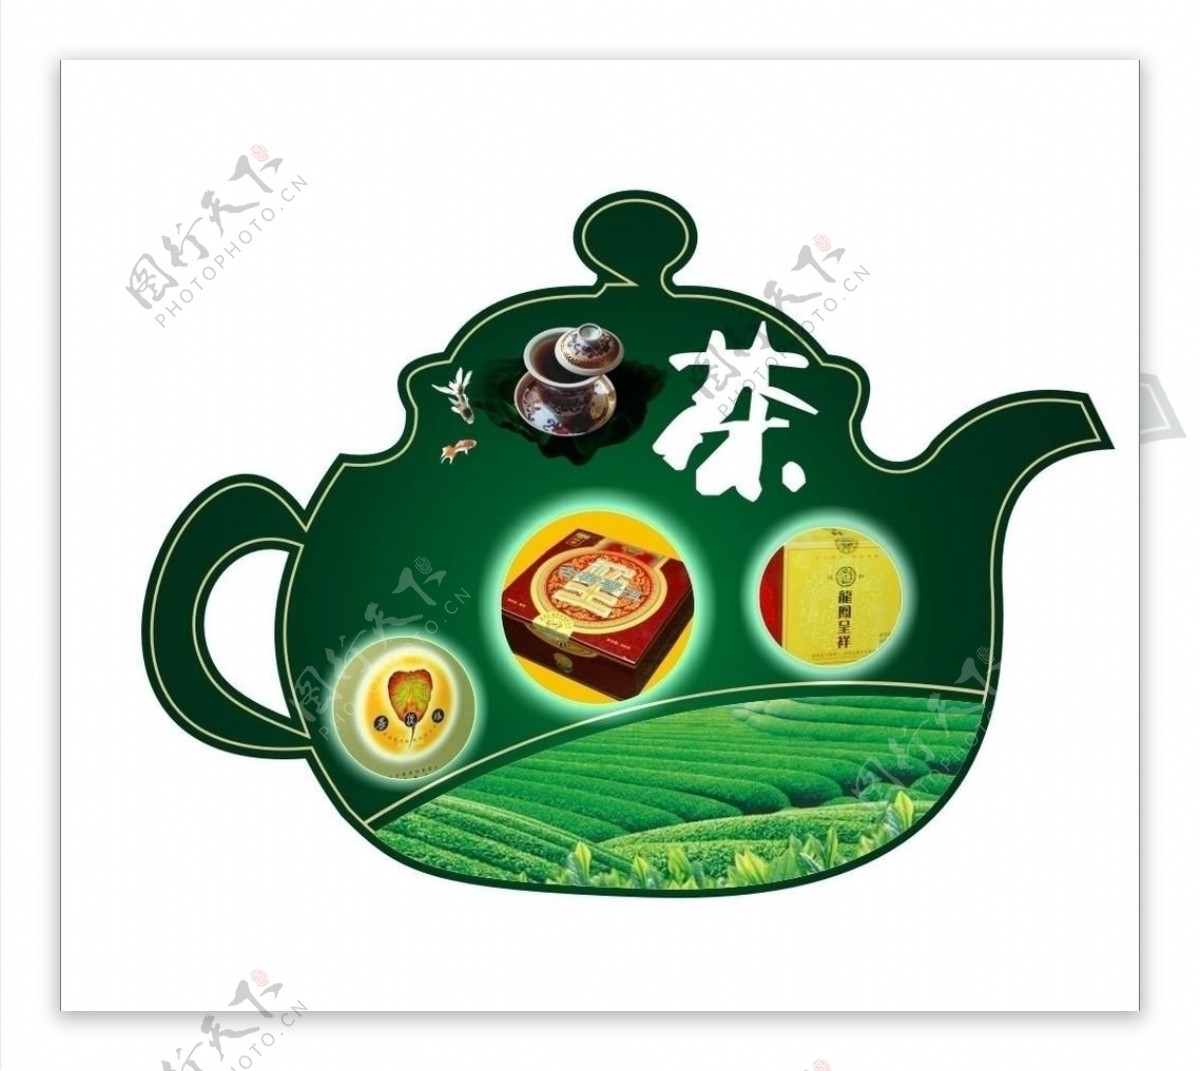 茶壶造型写真图片